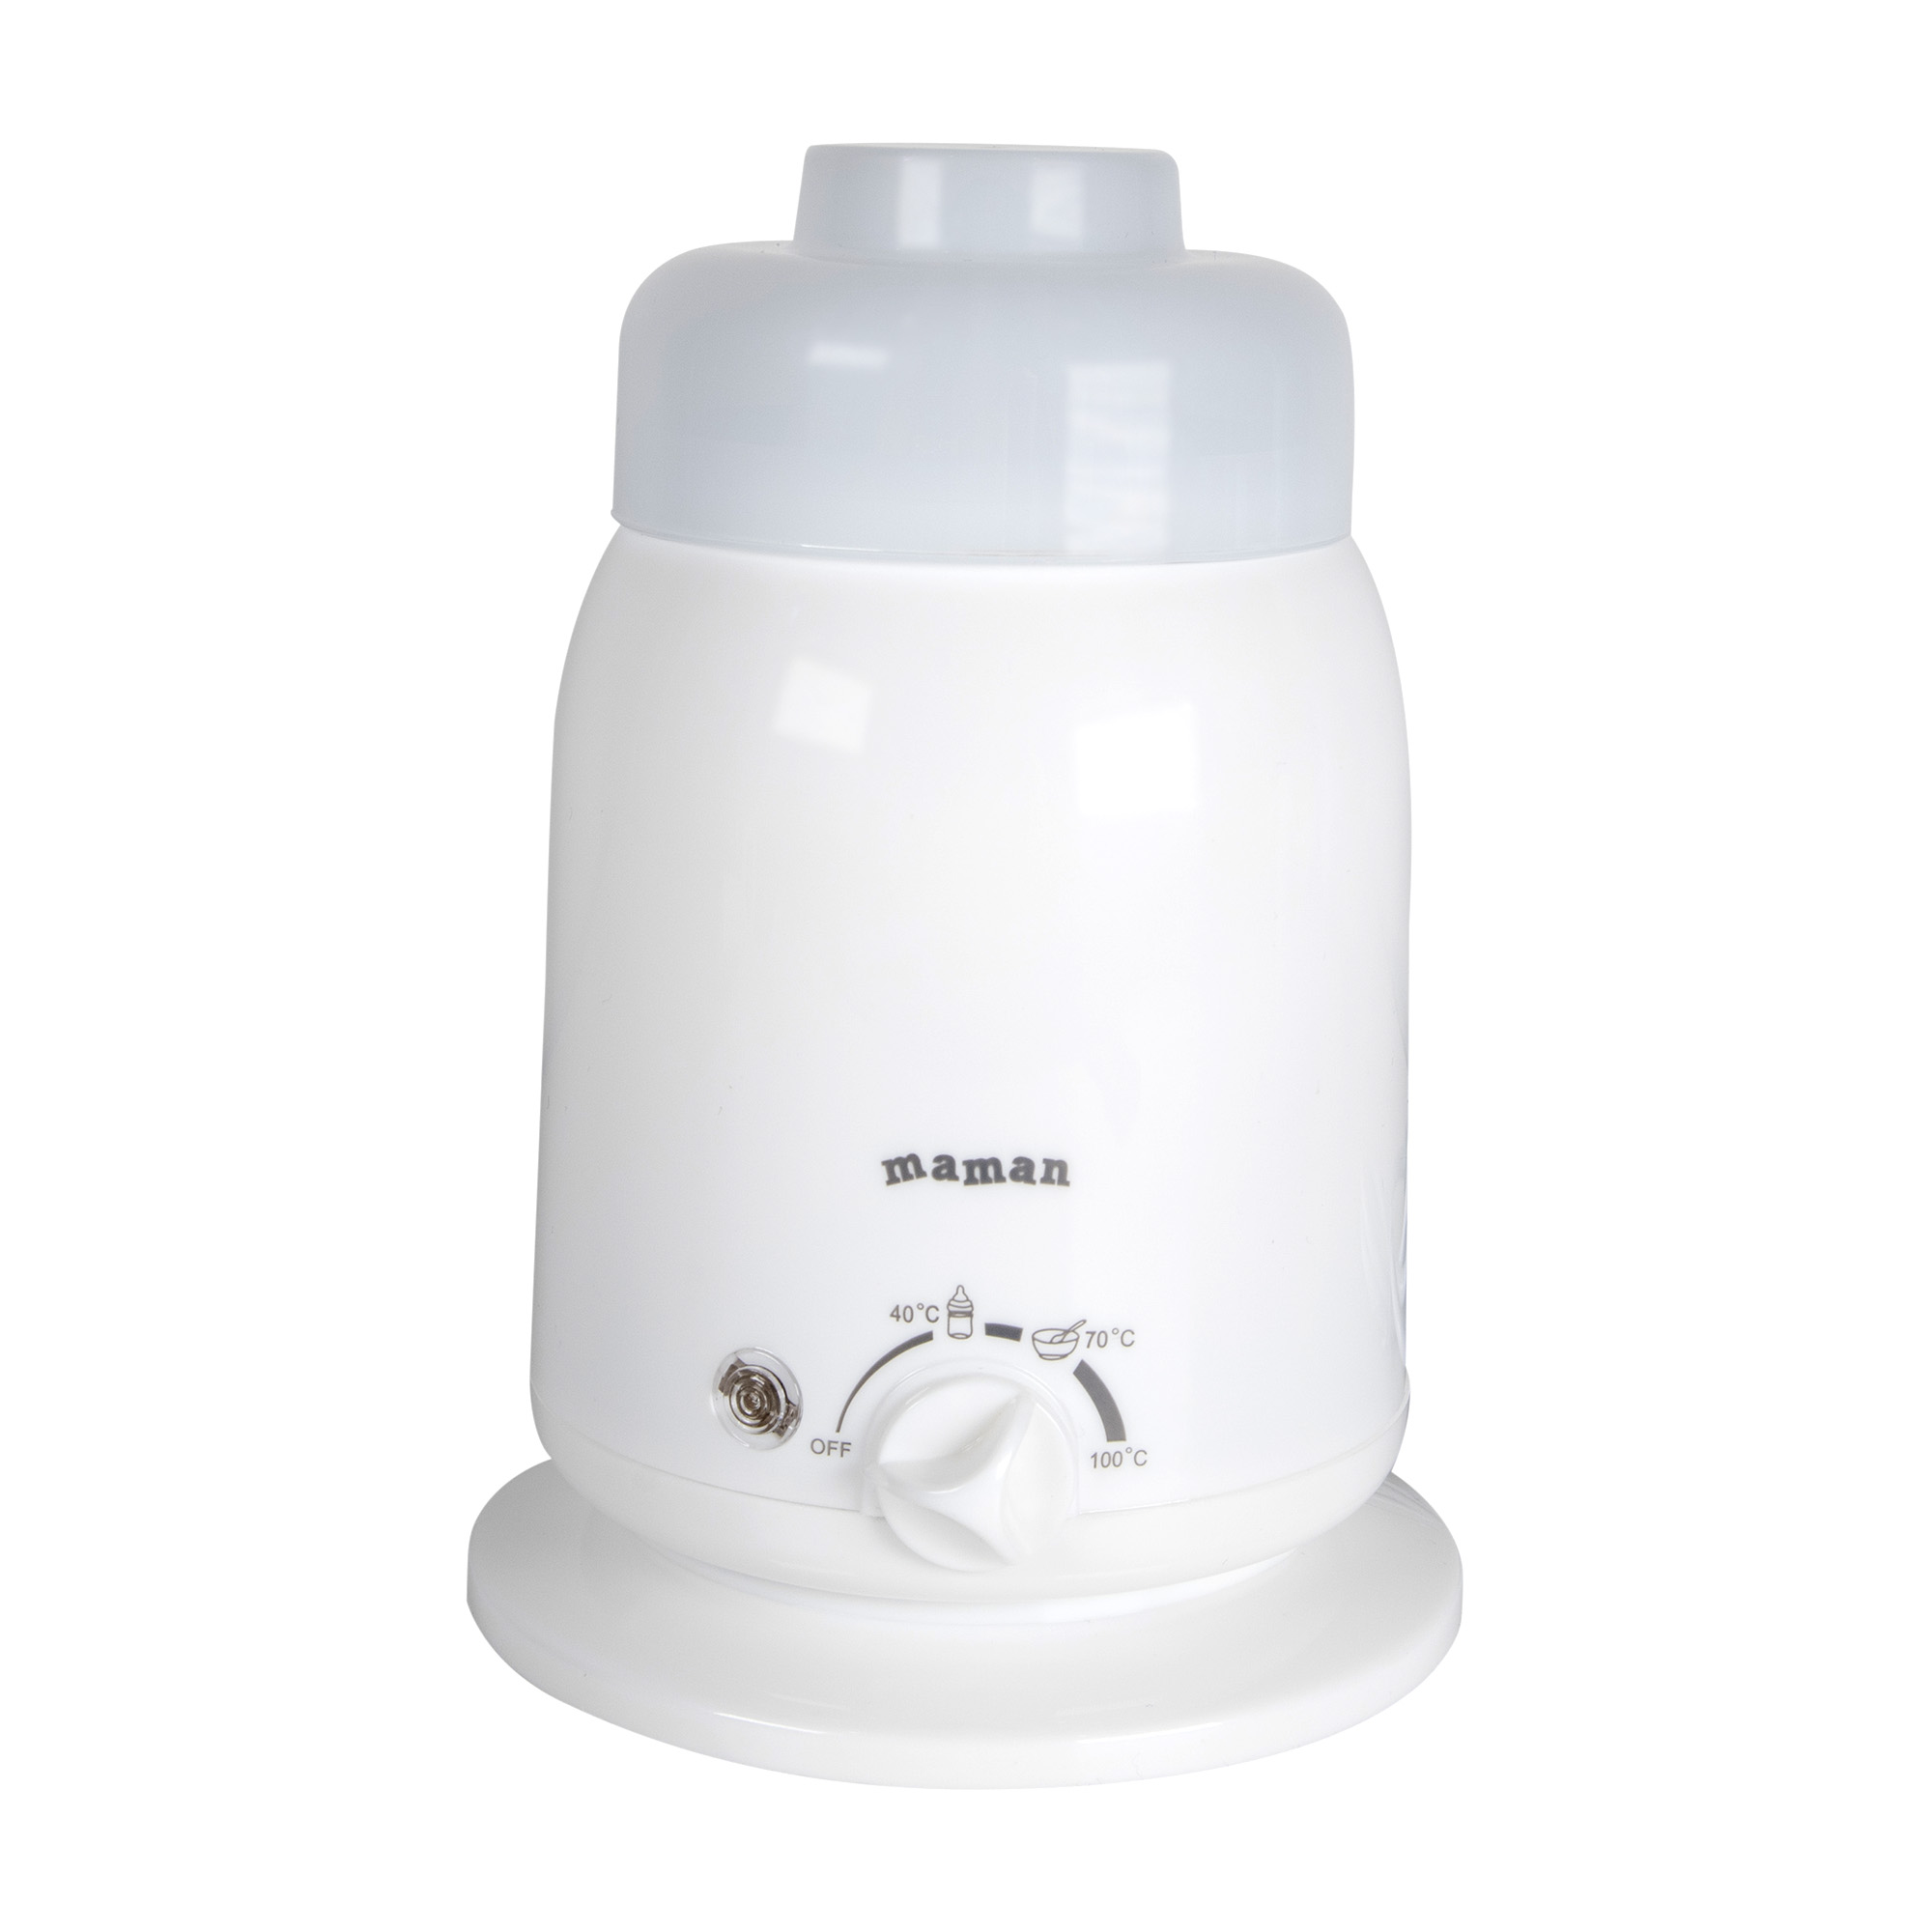 Подогреватель для детского питания Maman LS-B202 подогреватель для бутылочек maman rb 10 с сенсорным управлением